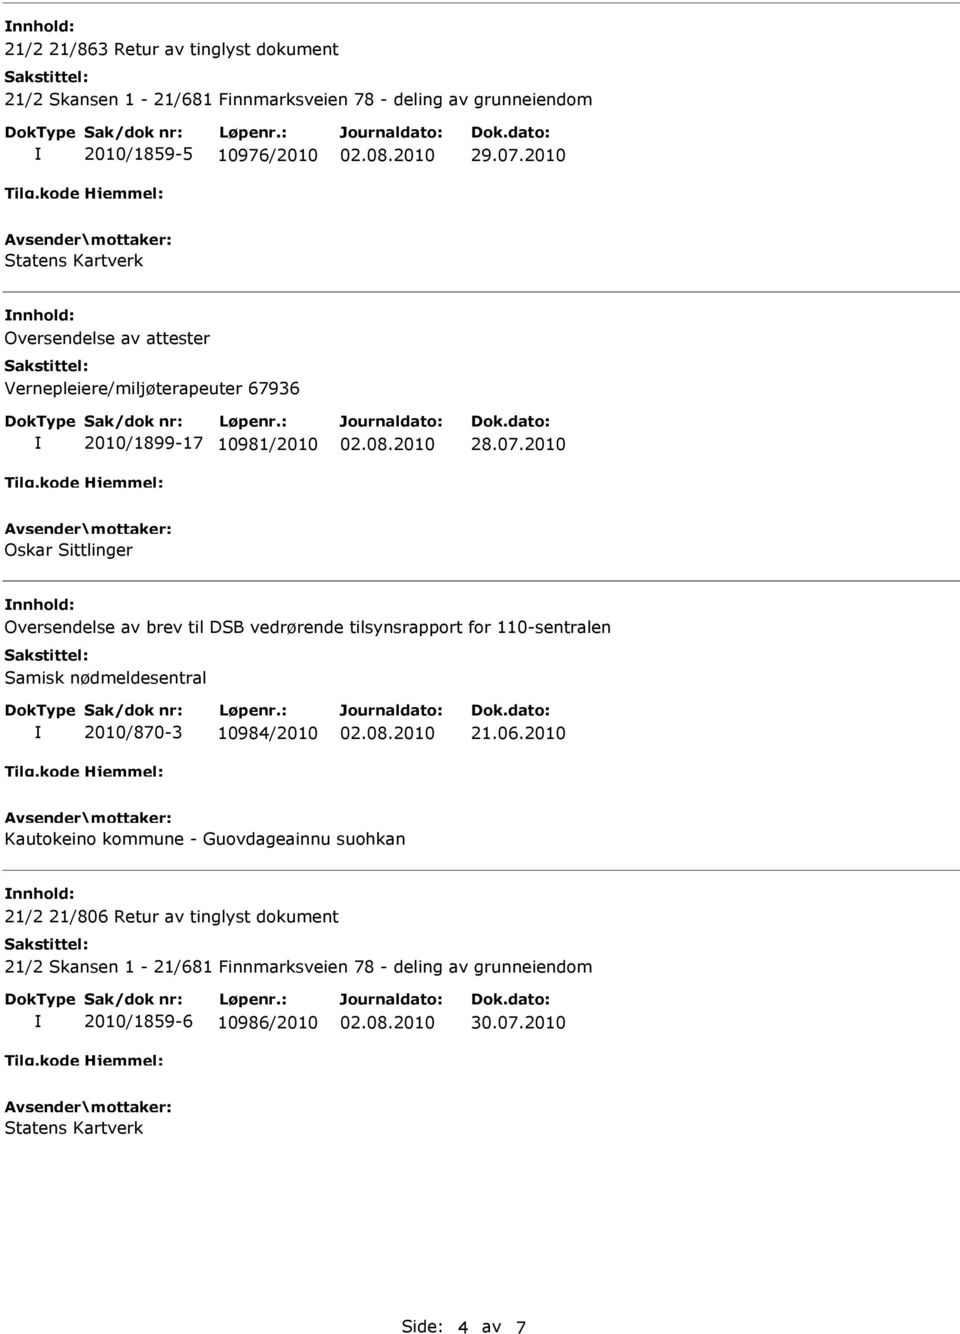 av brev til DSB vedrørende tilsynsrapport for 110-sentralen Samisk nødmeldesentral 2010/870-3 10984/2010 21.06.